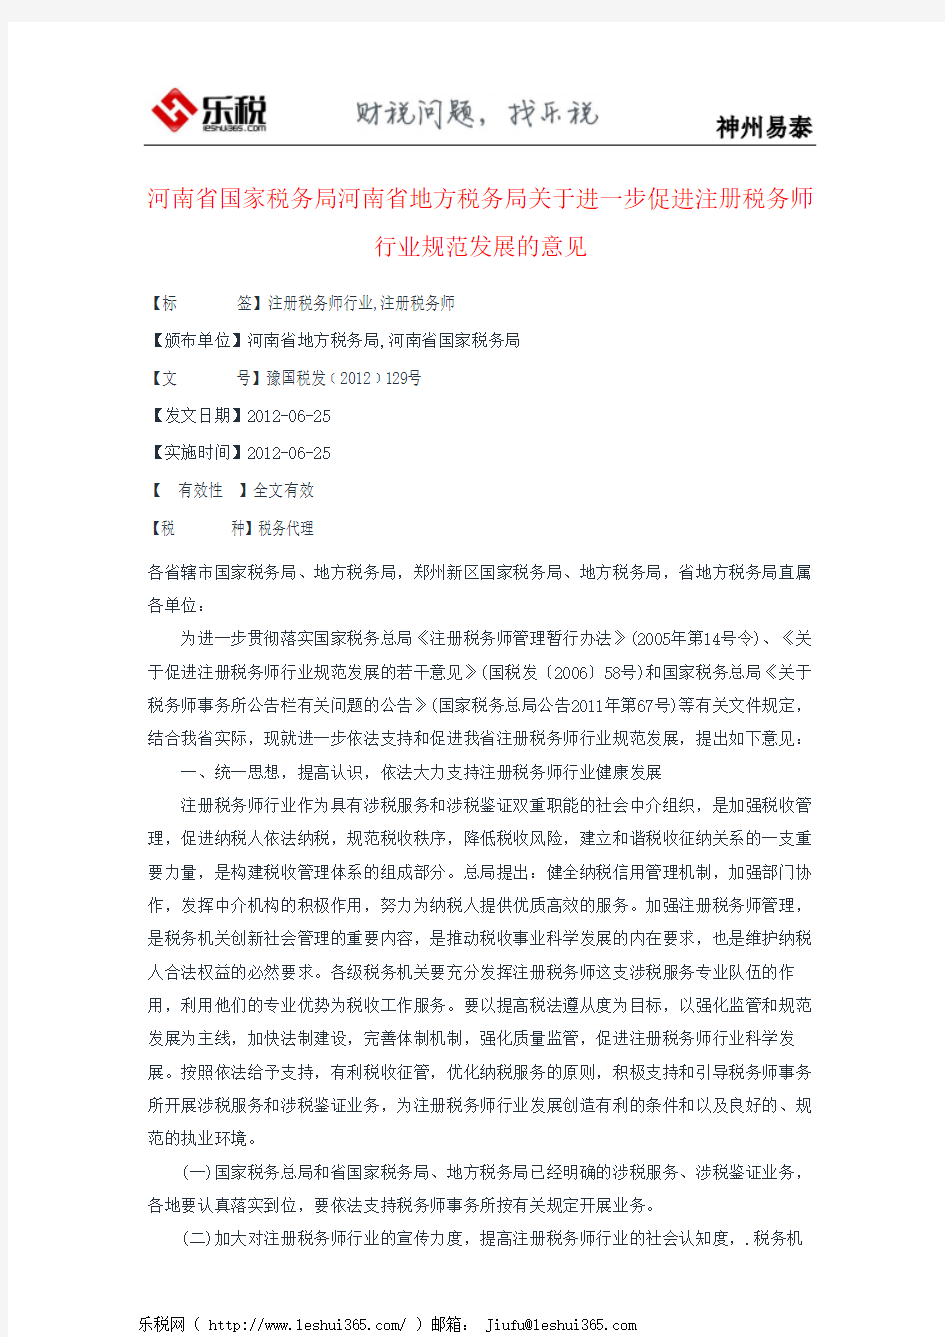 河南省国家税务局河南省地方税务局关于进一步促进注册税务师行业